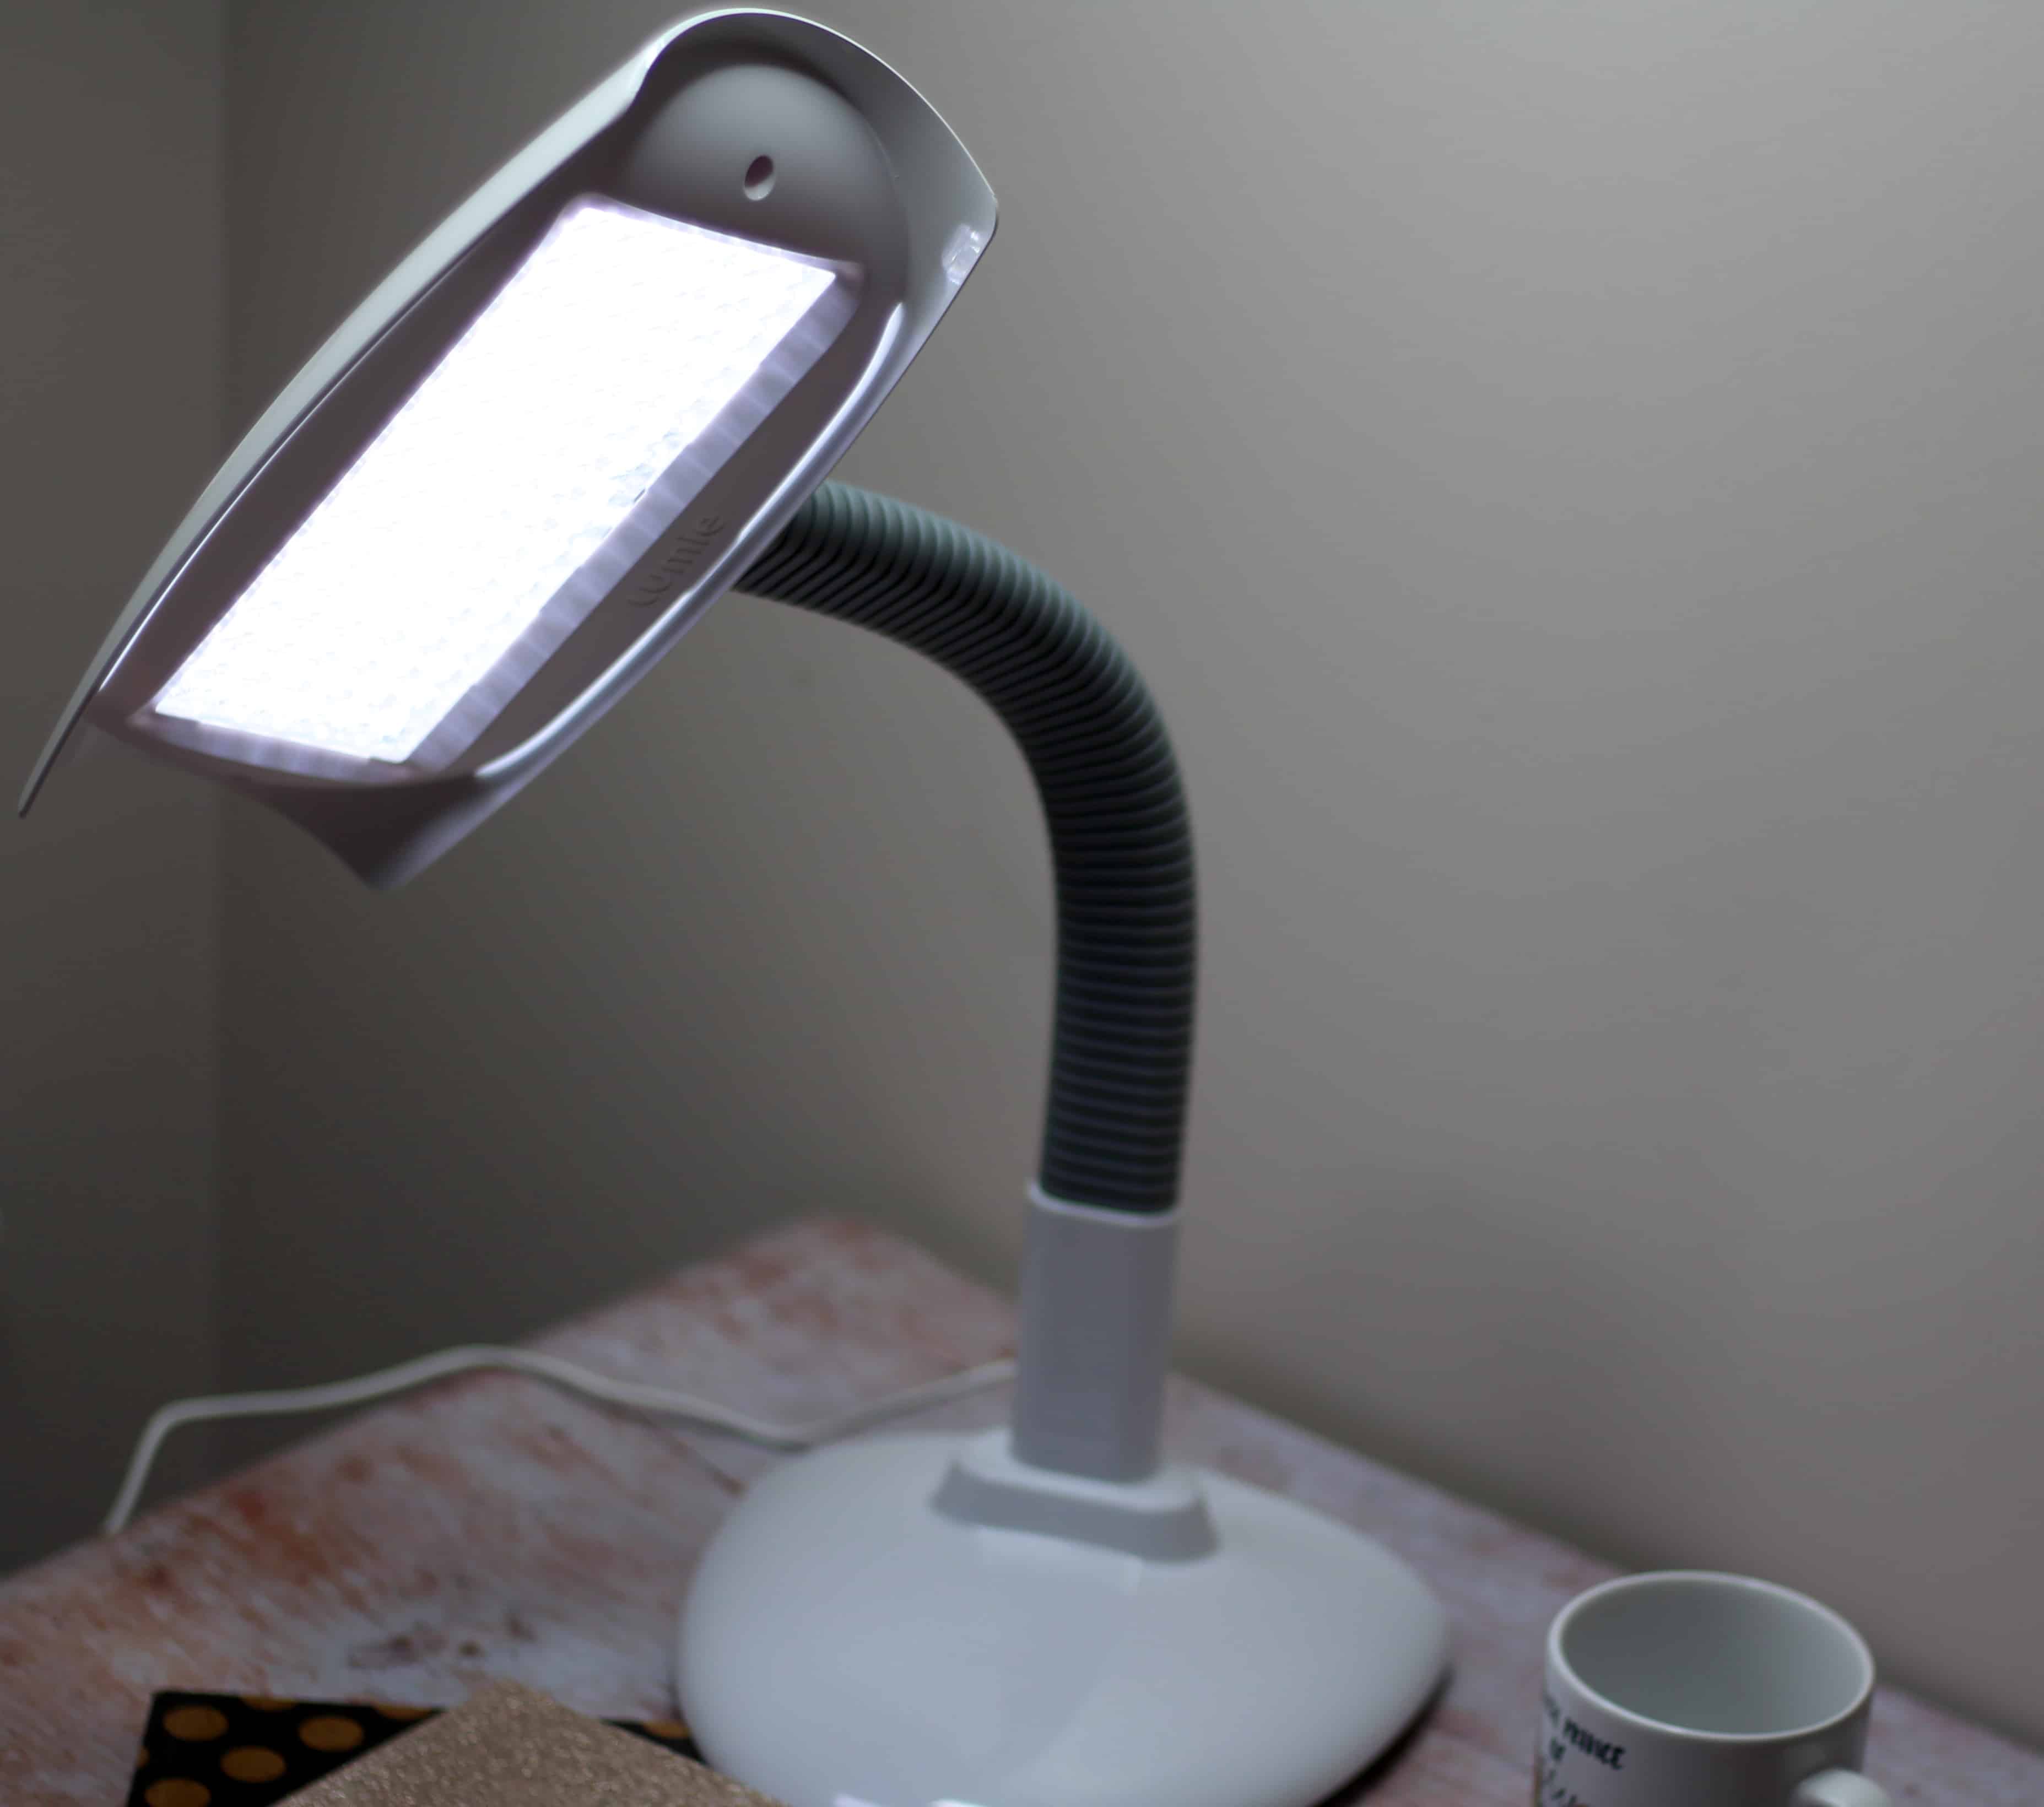 Lumie Desk Lamp Review - How It's 